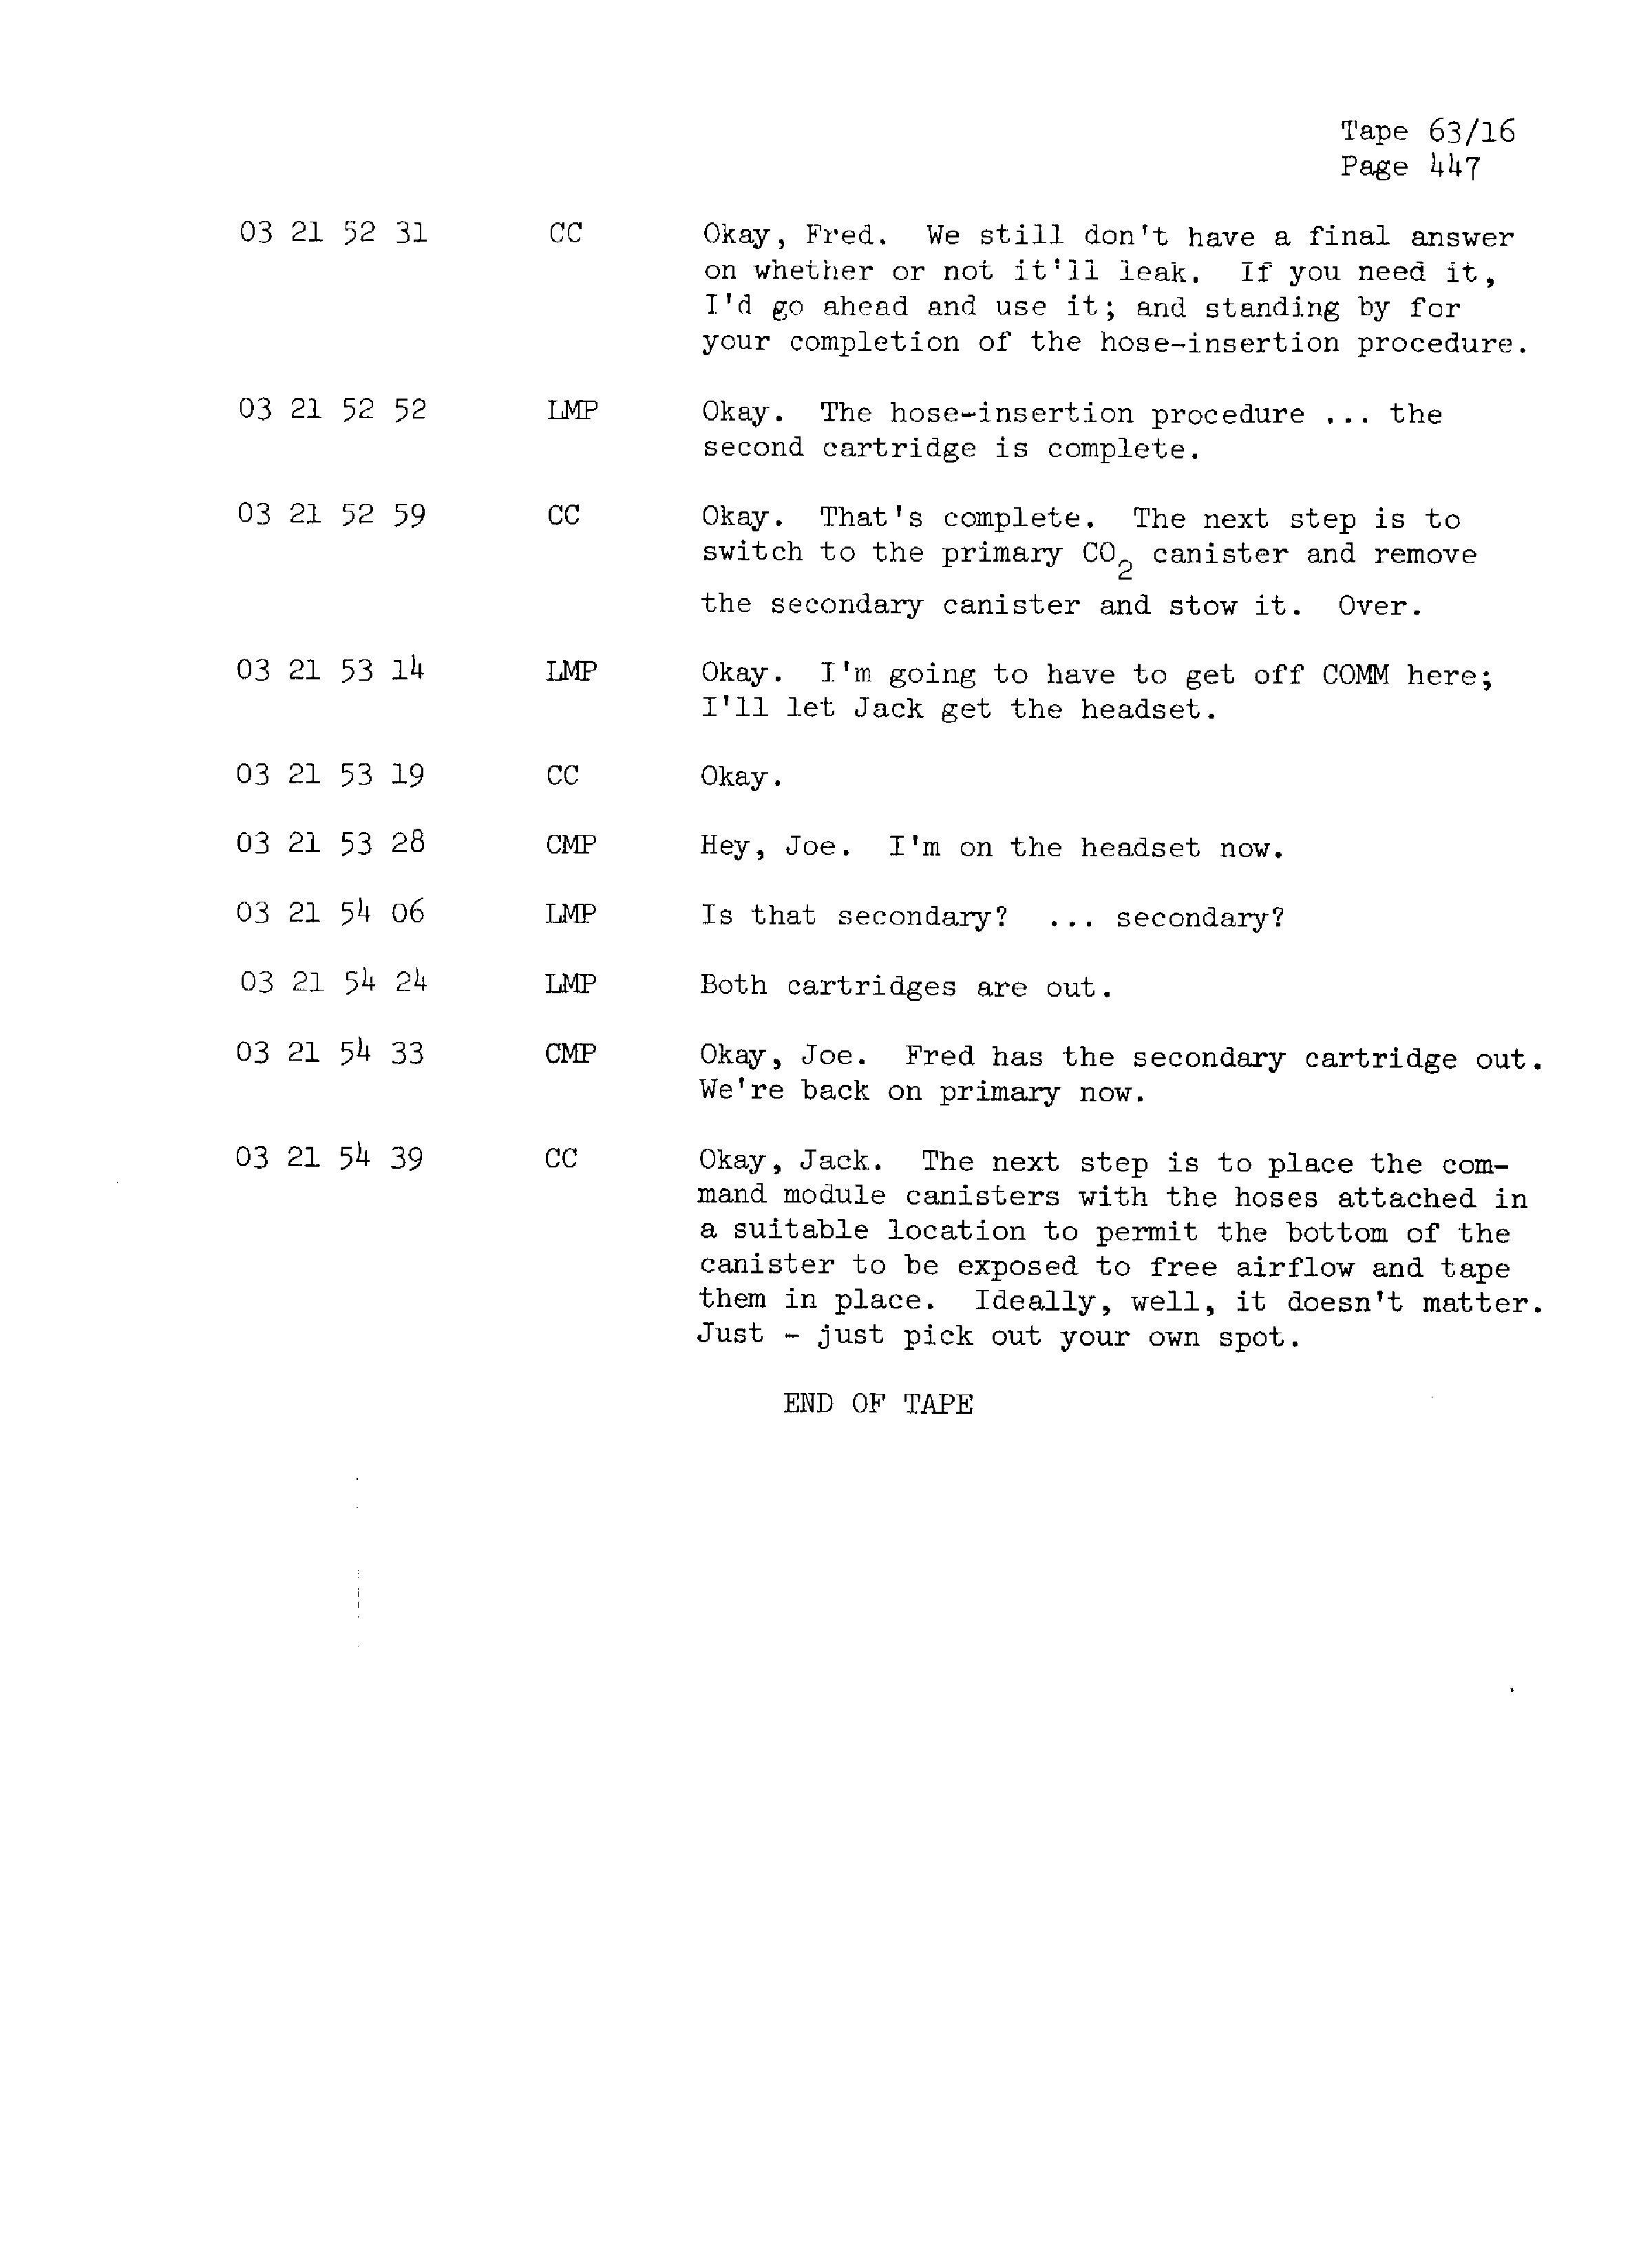 Page 454 of Apollo 13’s original transcript